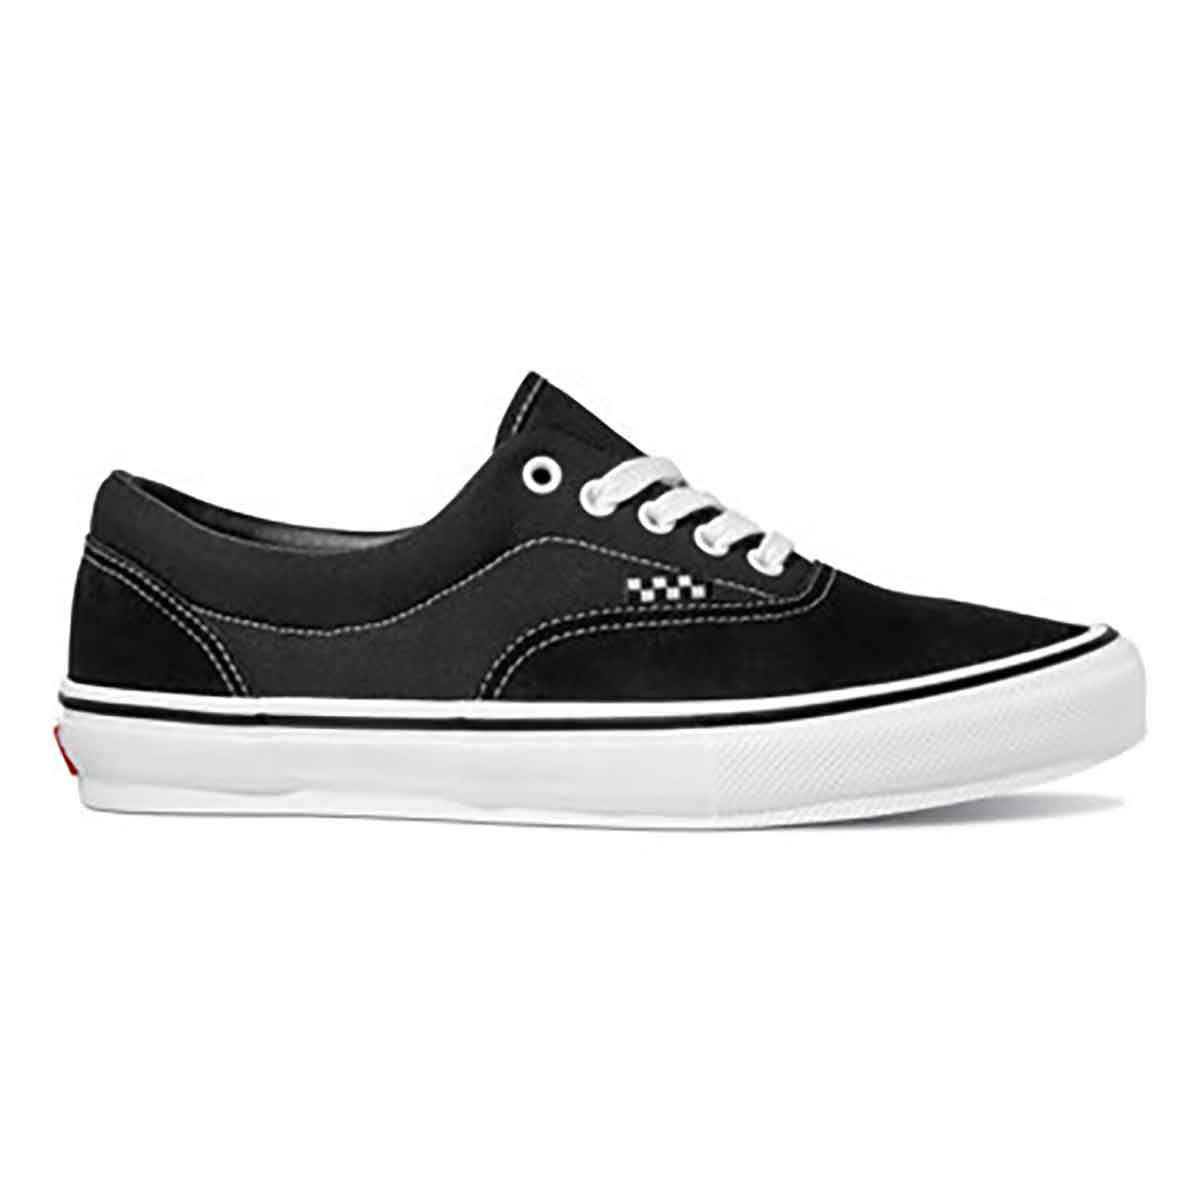 Adept air fragrance Vans Skate Era Shoes - Black/White | SoCal Skateshop